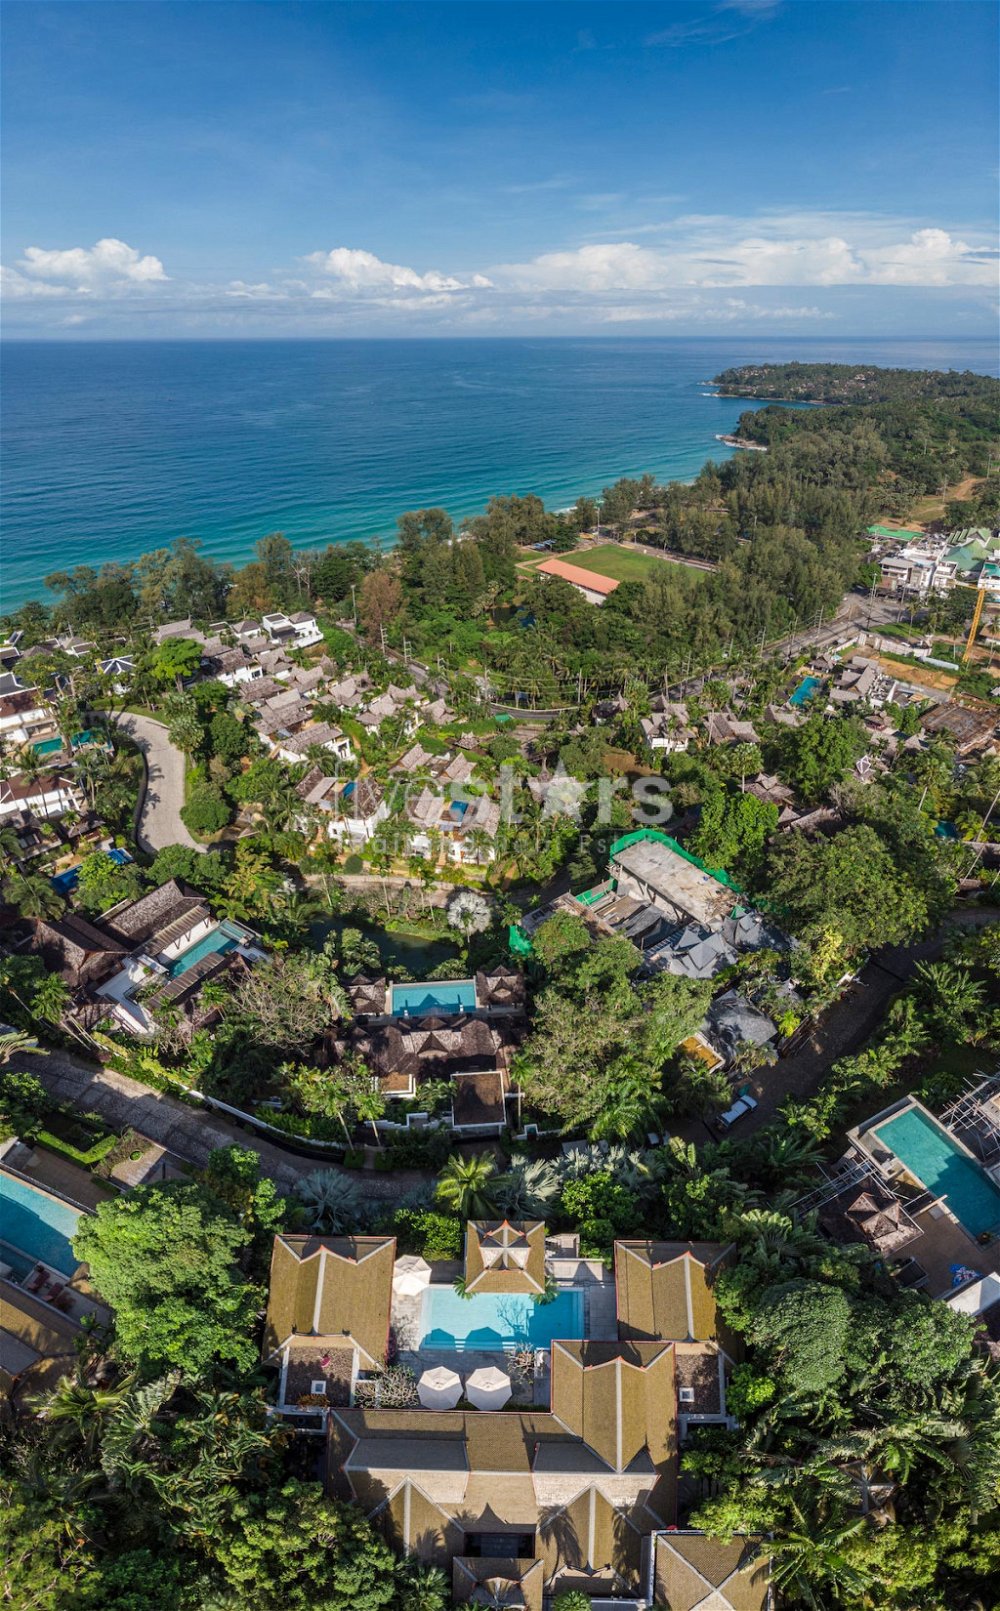 Splendid Seaview pool villa for sale in Phuket 326226080